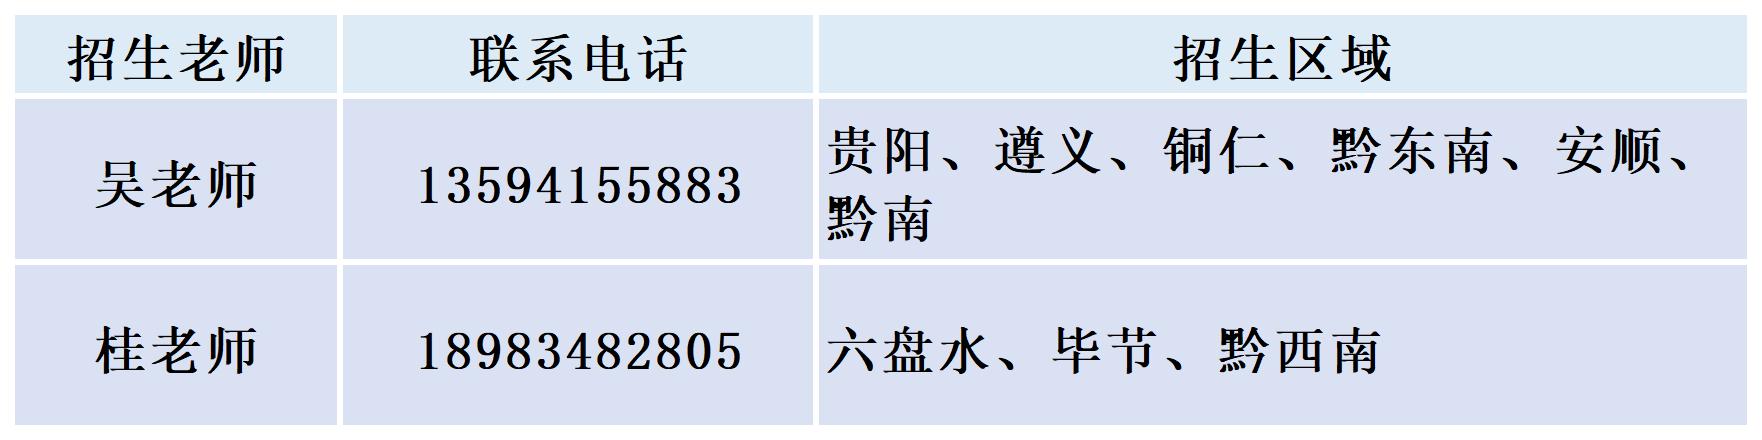 2021重庆四川贵州联系电话_Sheet1(2).jpg